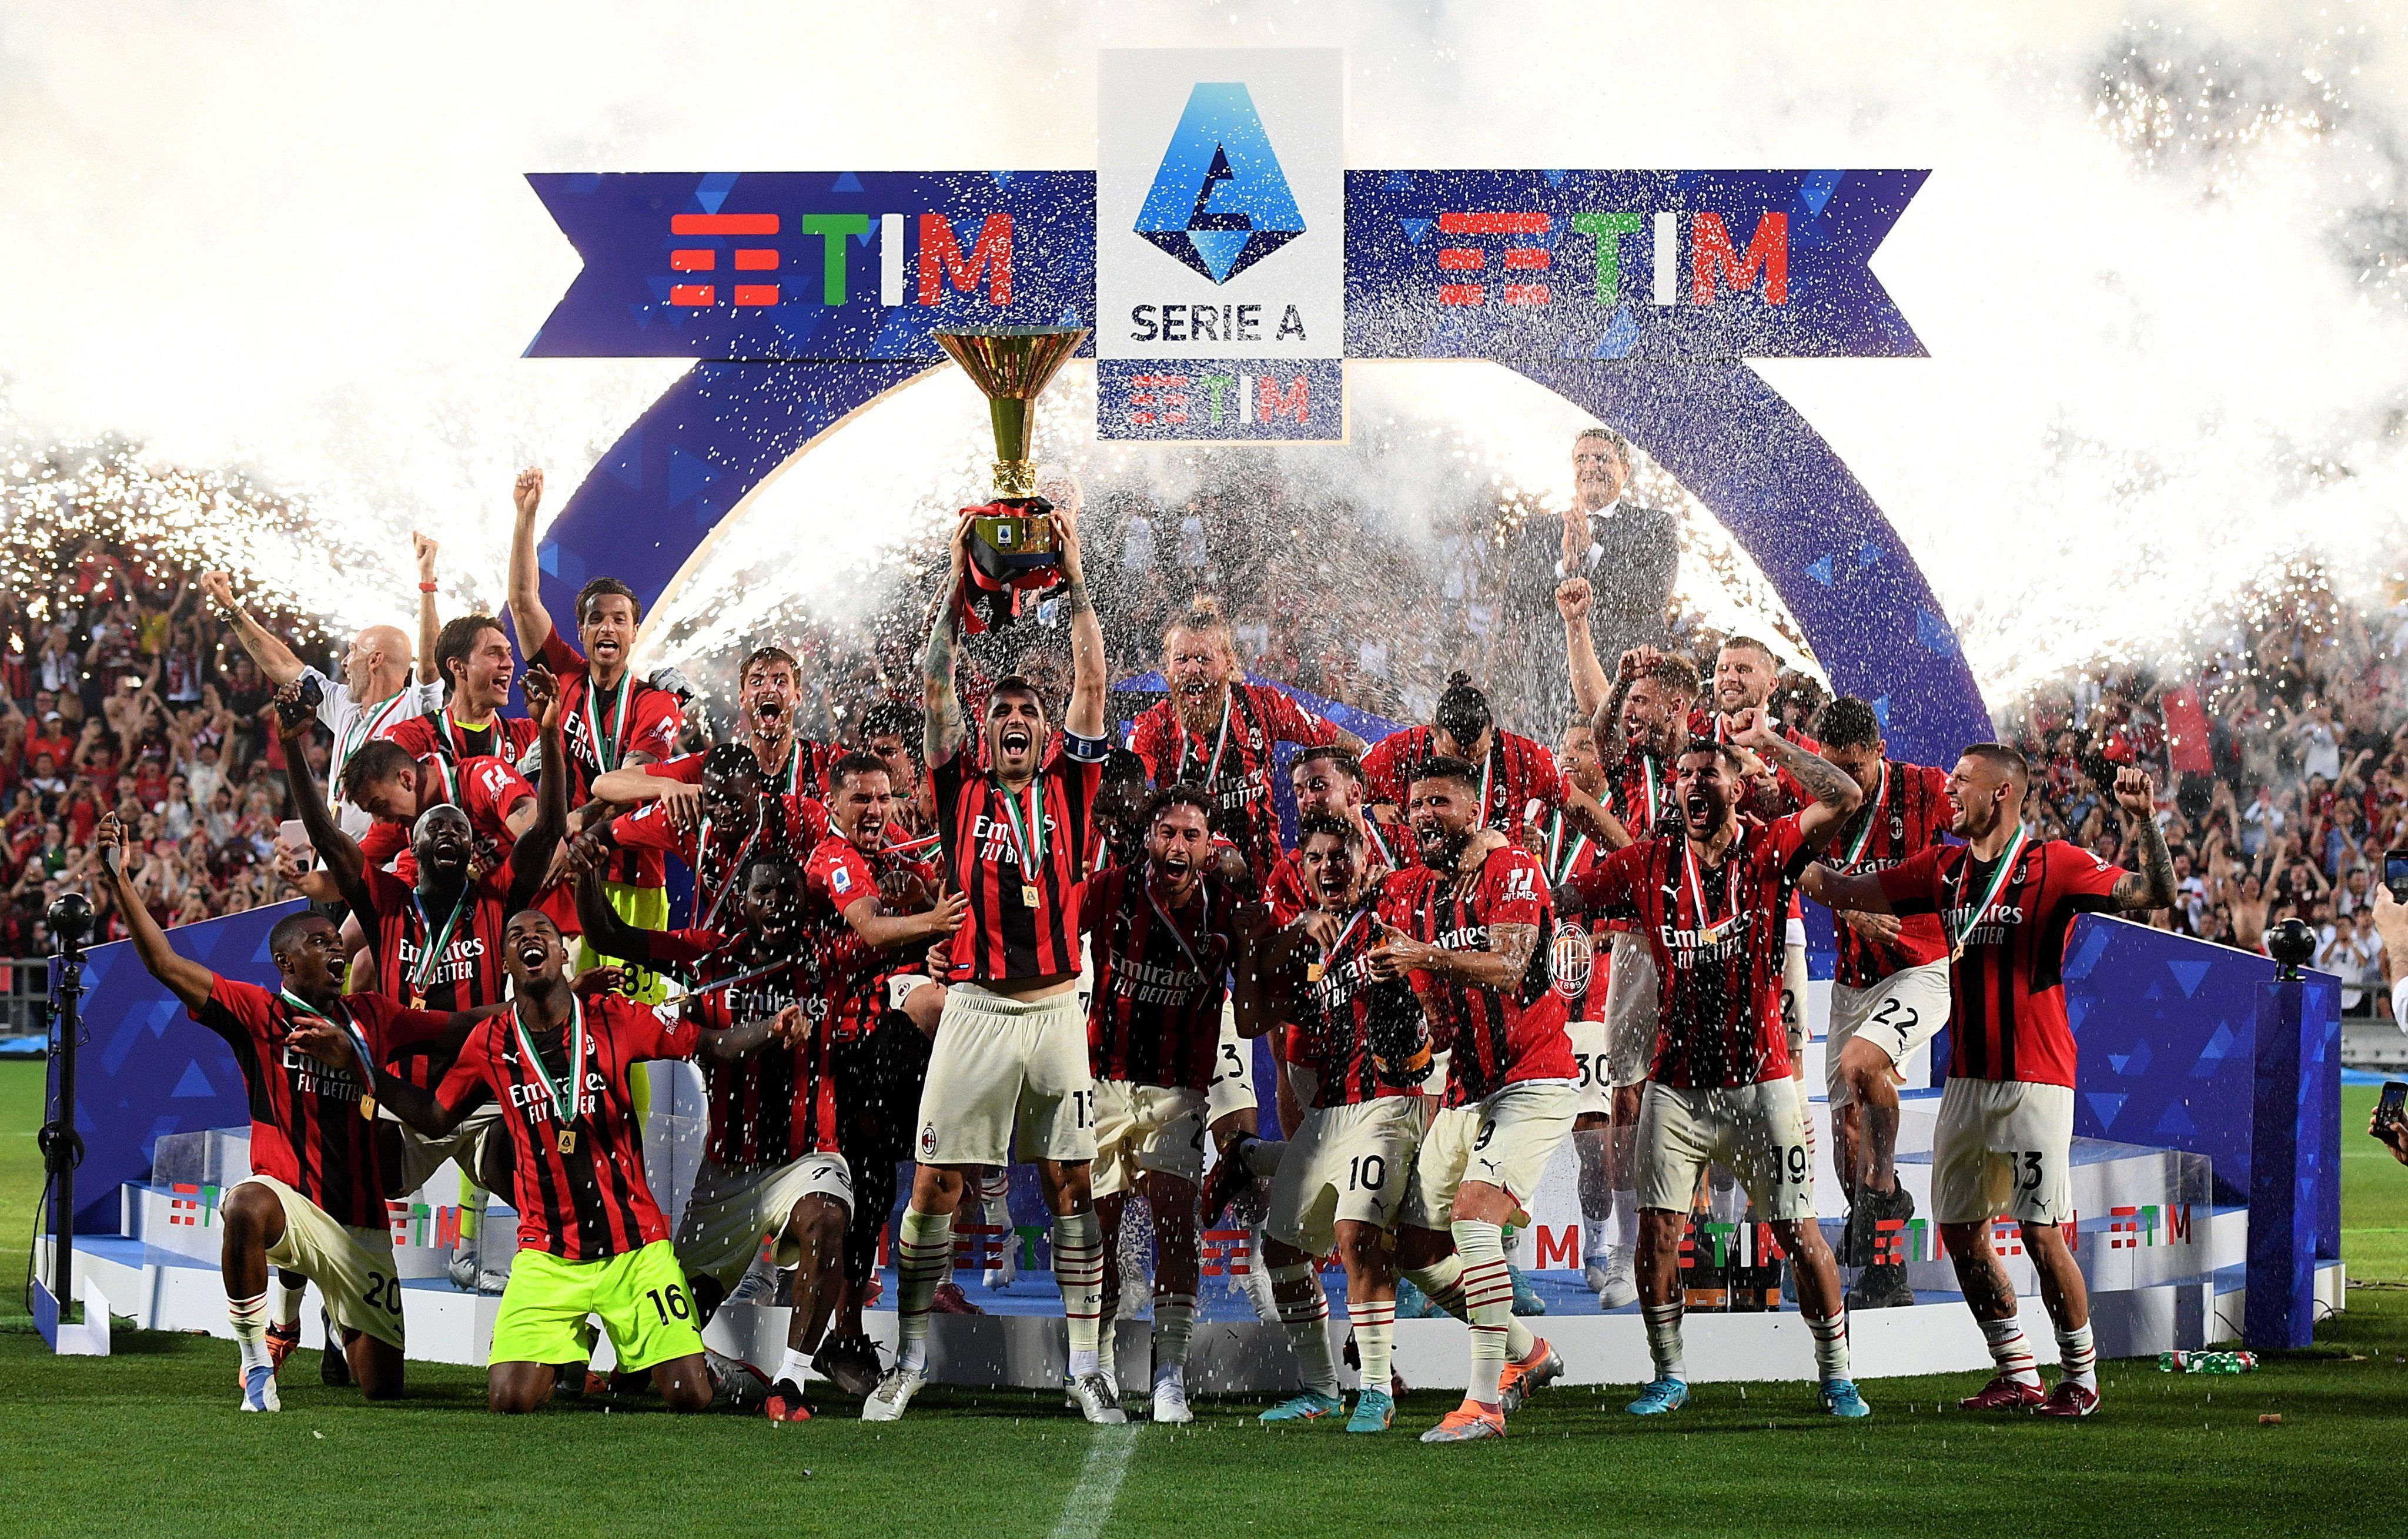 Милан впервые за 11 лет поднял над головой чемпионский кубок Серии А - 24 канал Спорт